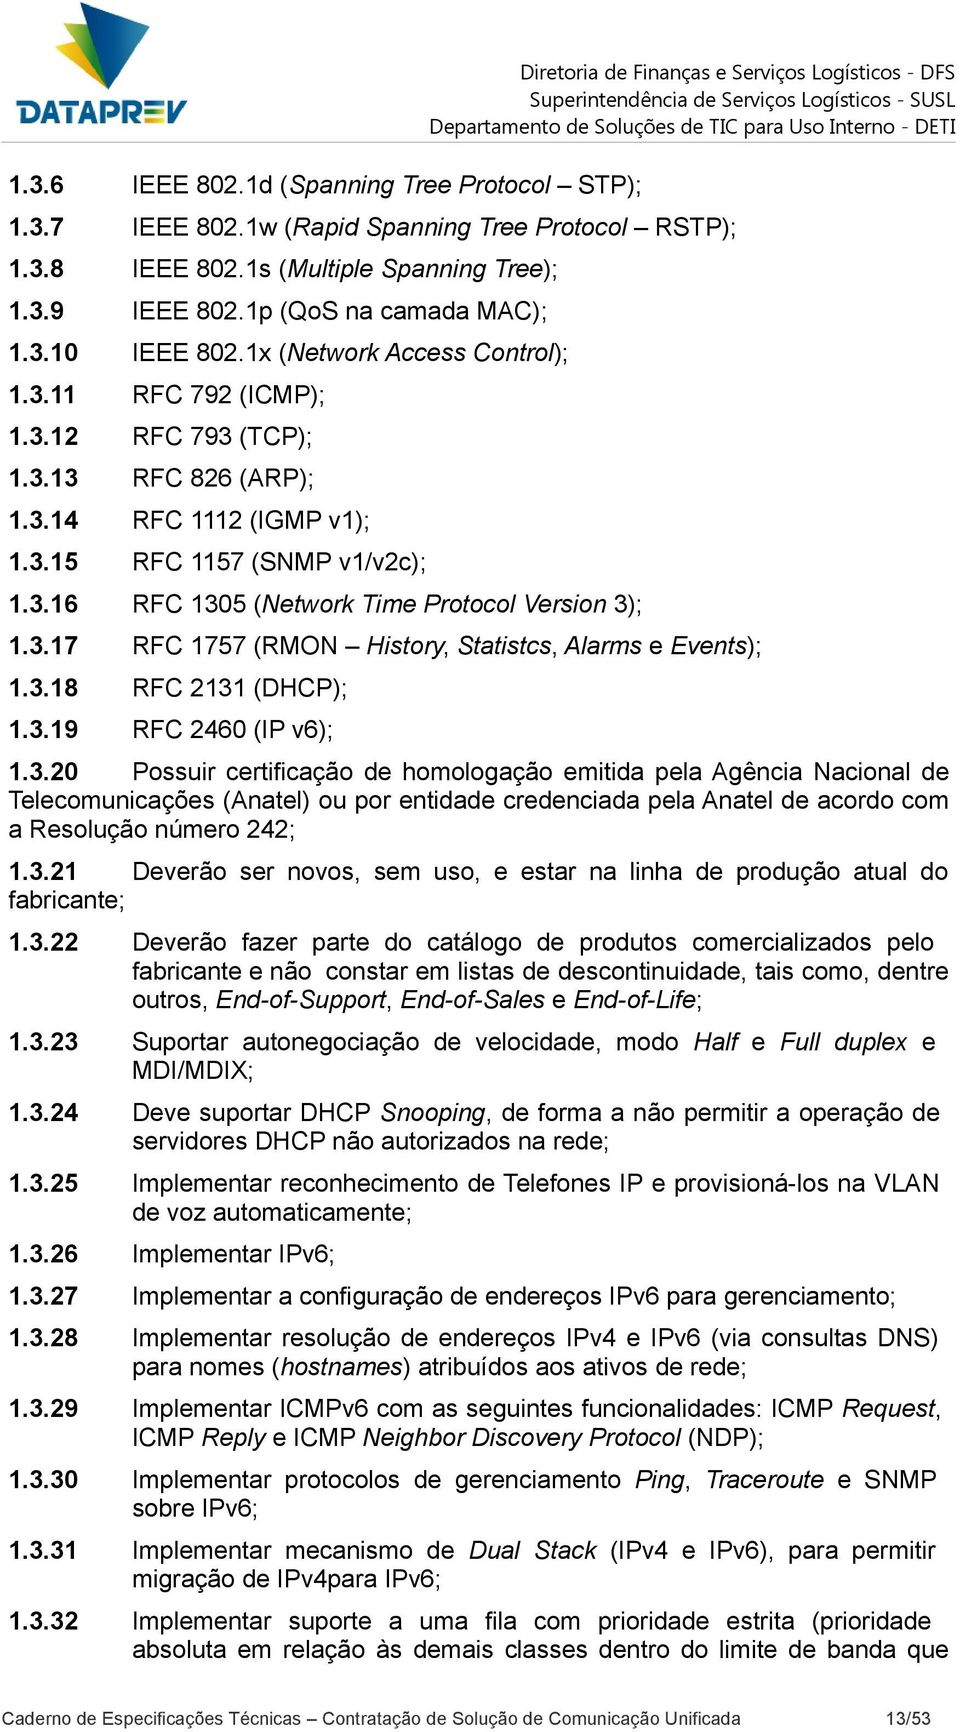 3.16 RFC 1305 (Network Time Protocol Version 3); 1.3.17 RFC 1757 (RMON History, Statistcs, Alarms e Events); 1.3.18 RFC 2131 (DHCP); 1.3.19 RFC 2460 (IP v6); 1.3.20 Possuir certificação de homologação emitida pela Agência Nacional de Telecomunicações (Anatel) ou por entidade credenciada pela Anatel de acordo com a Resolução número 242; 1.